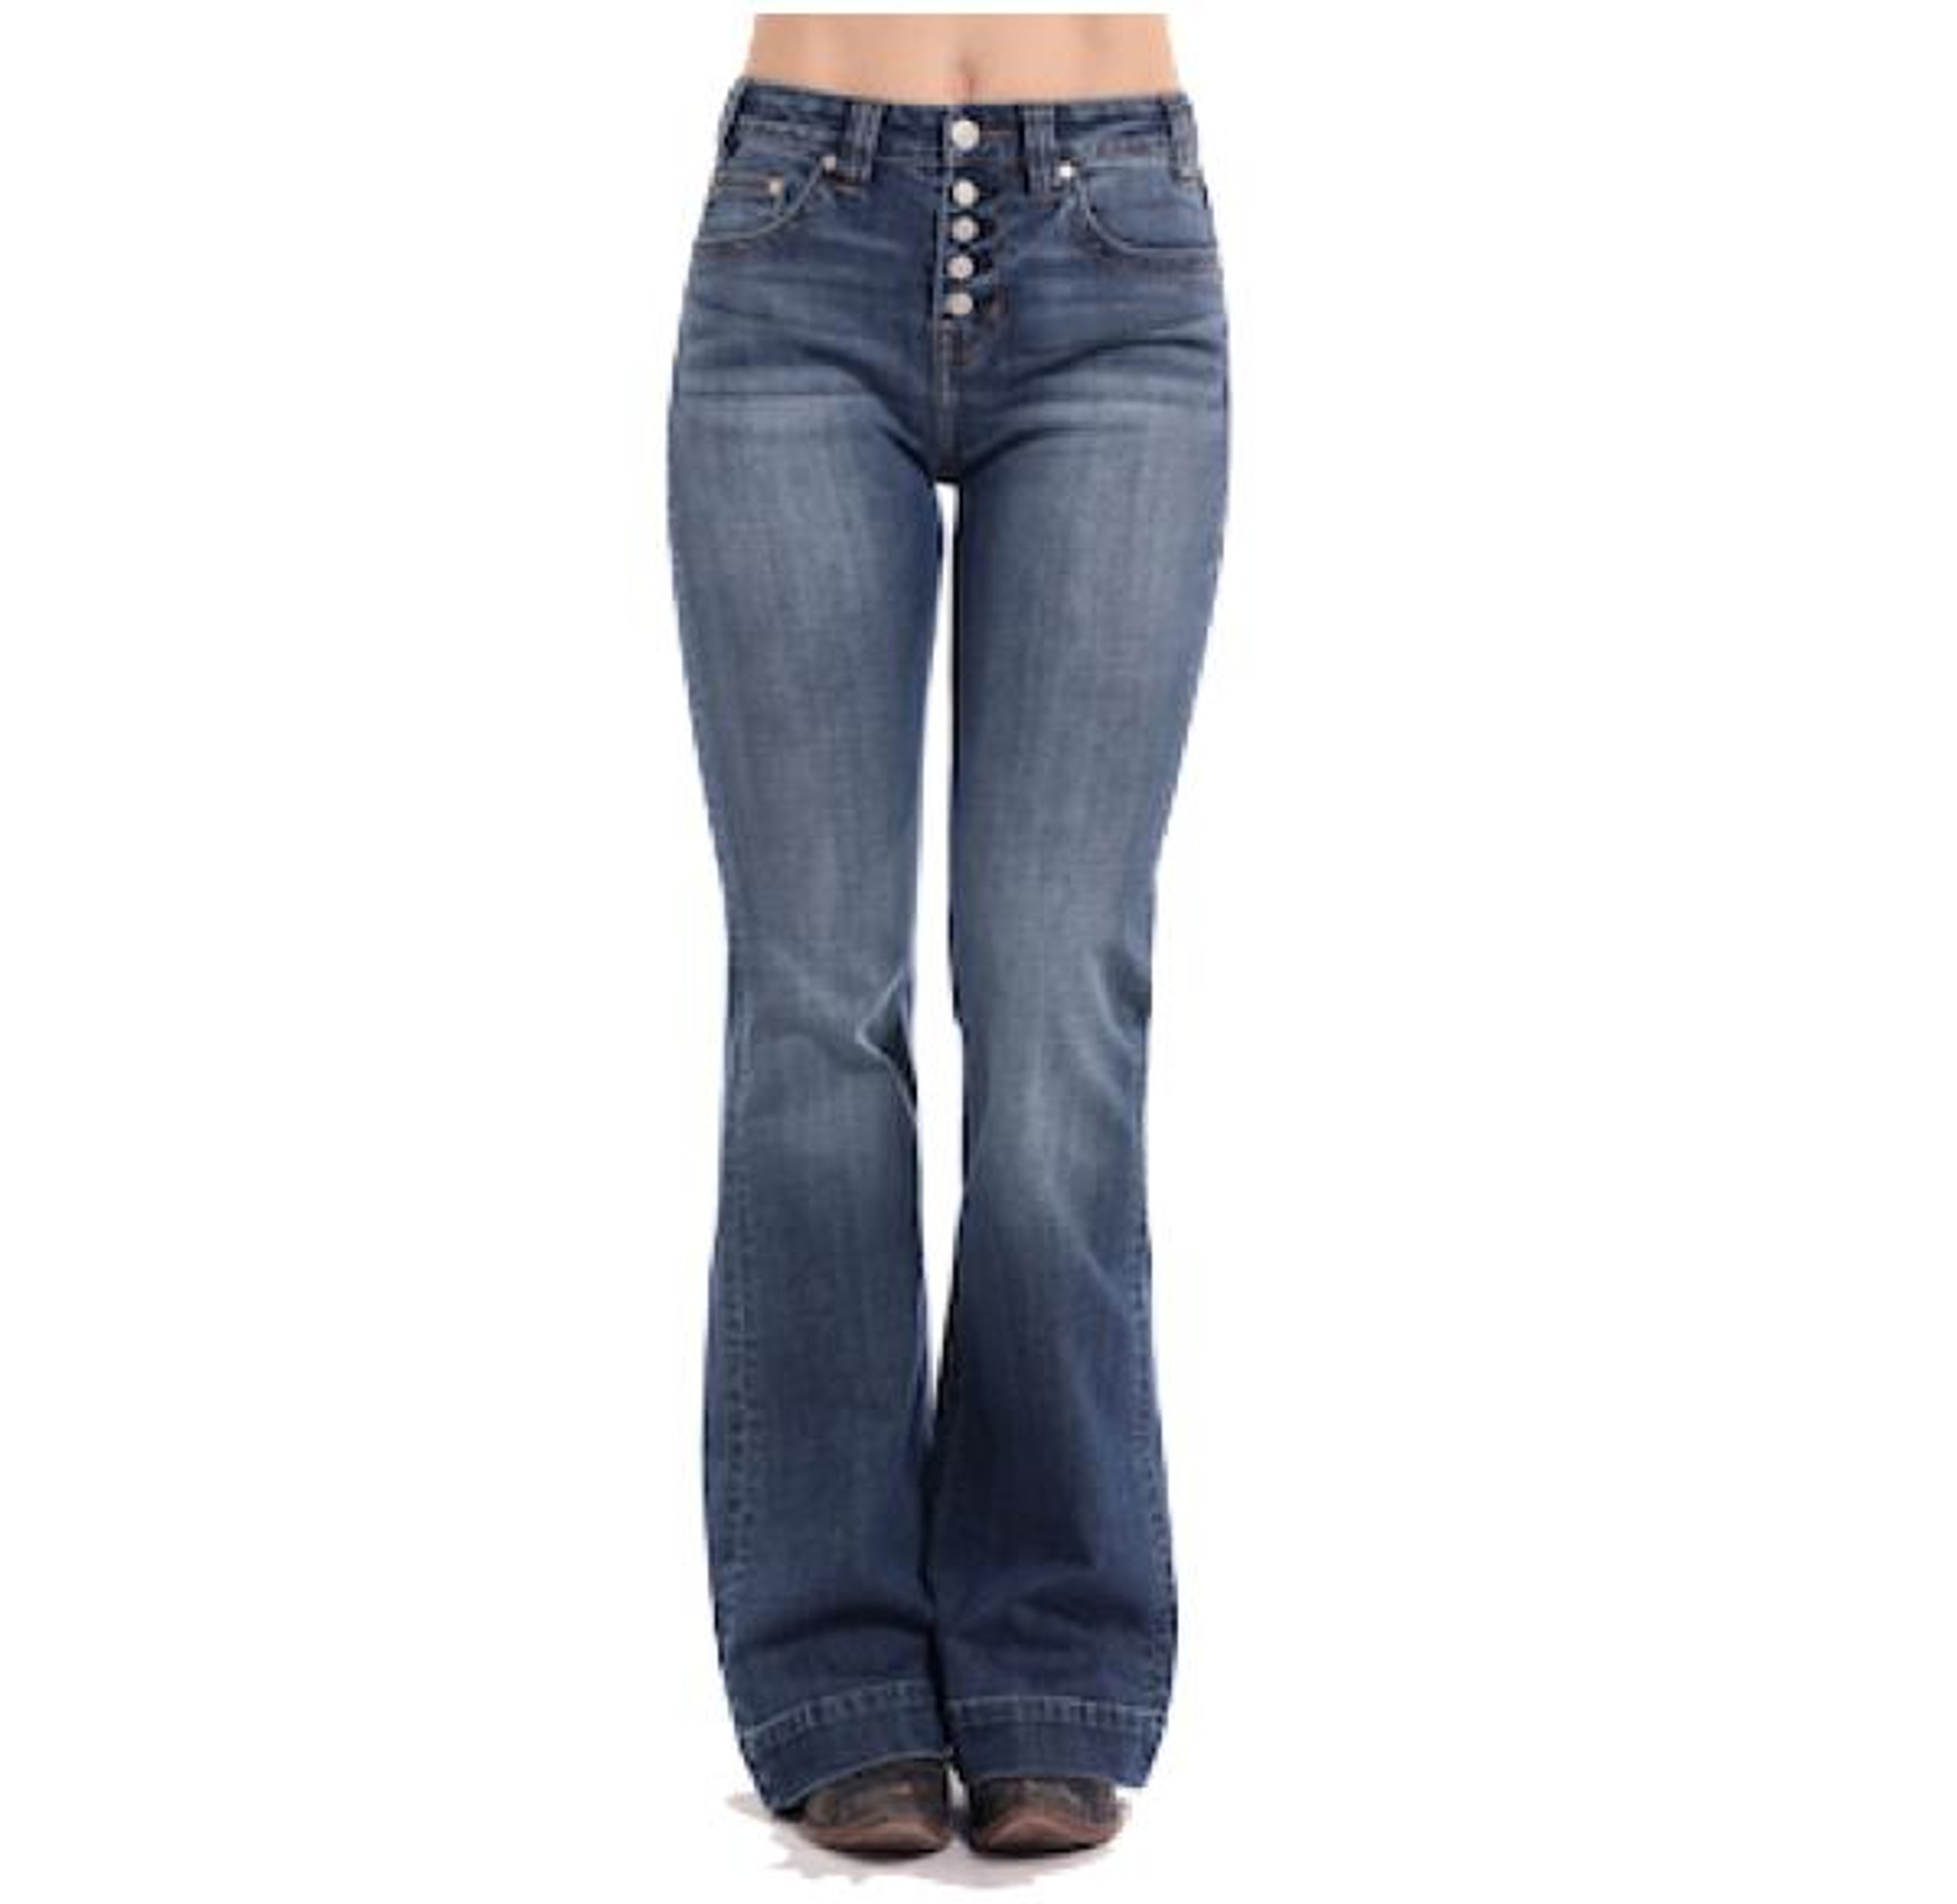 Buy ladies white jeans pants below 500 in India @ Limeroad